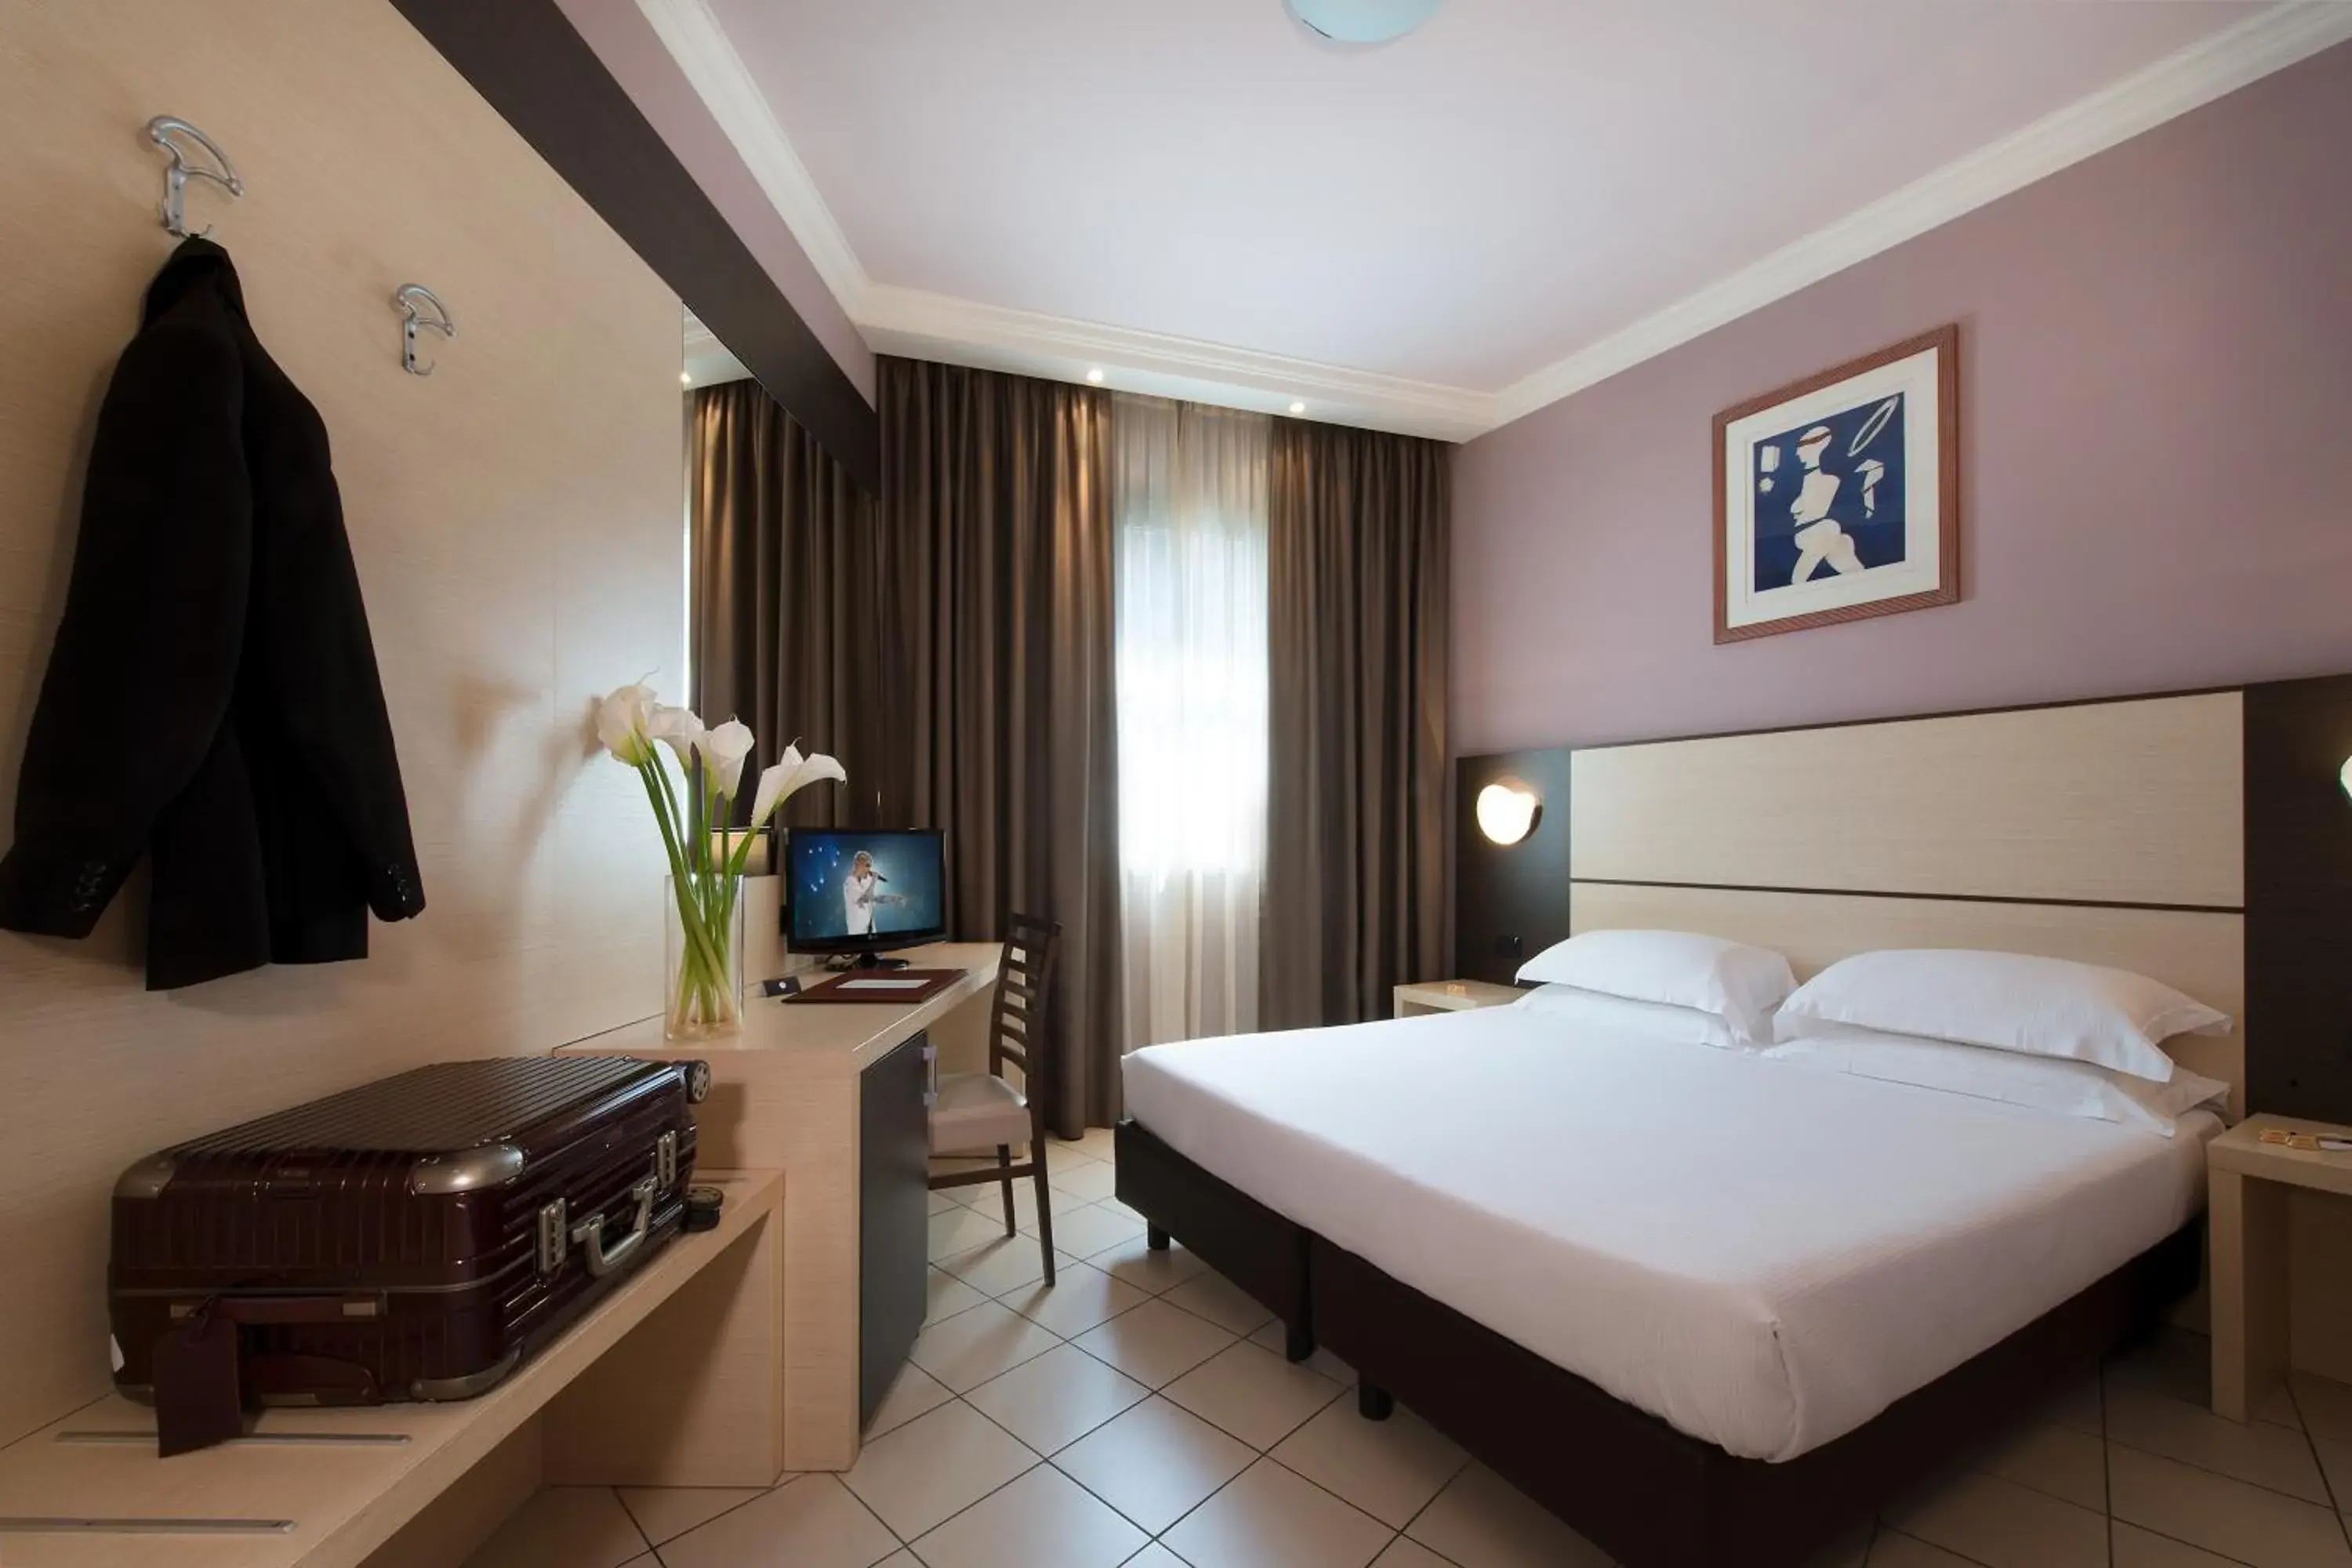 Bedroom, Room Photo in CDH Hotel La Spezia